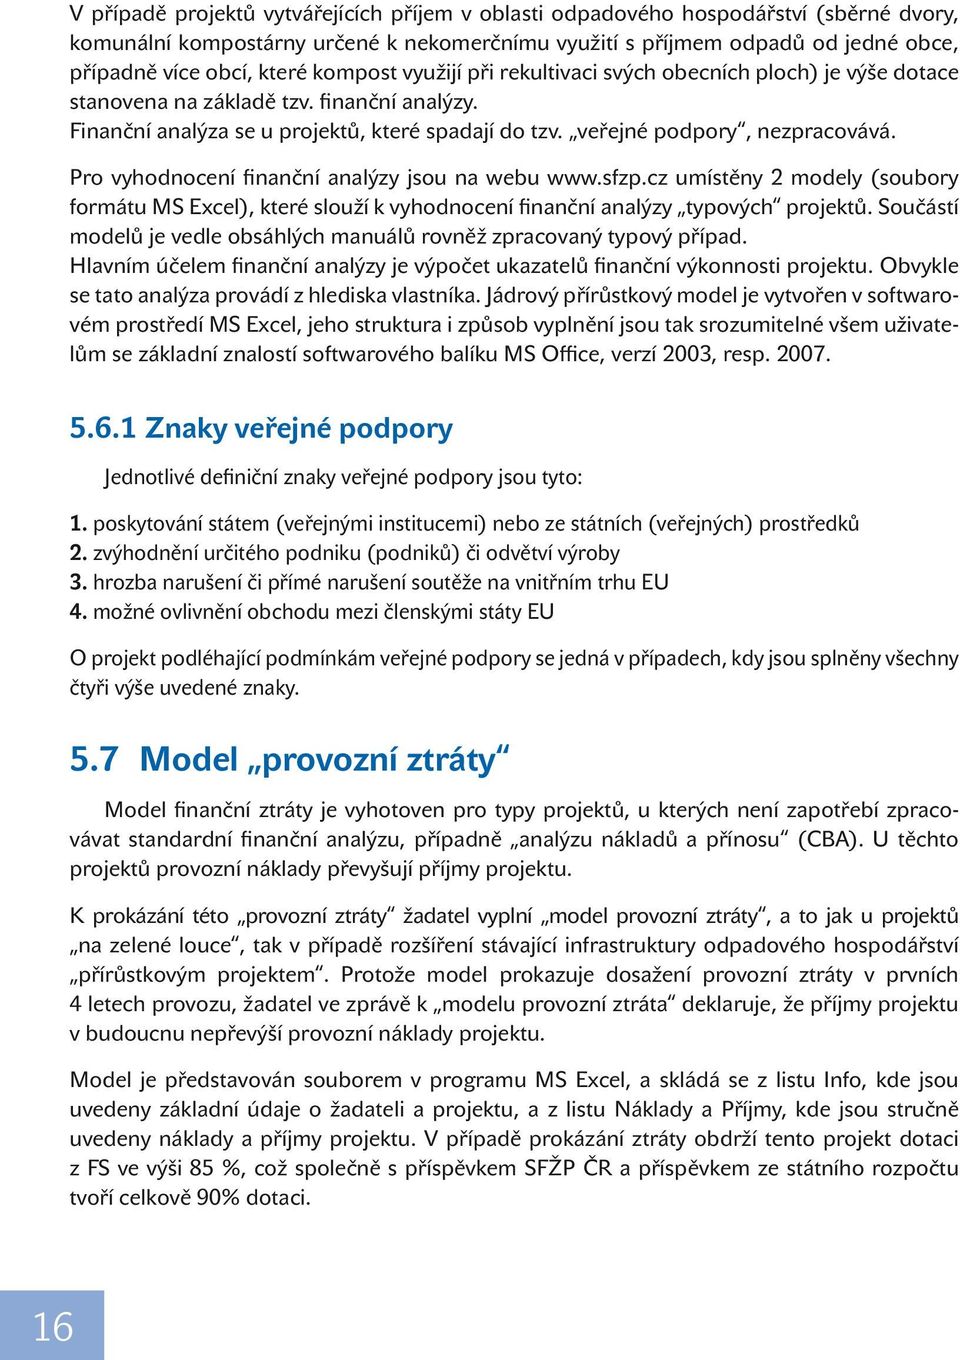 Pro vyhodnocení finanční analýzy jsou na webu www.sfzp.cz umístěny 2 modely (soubory formátu MS Excel), které slouží k vyhodnocení finanční analýzy typových projektů.